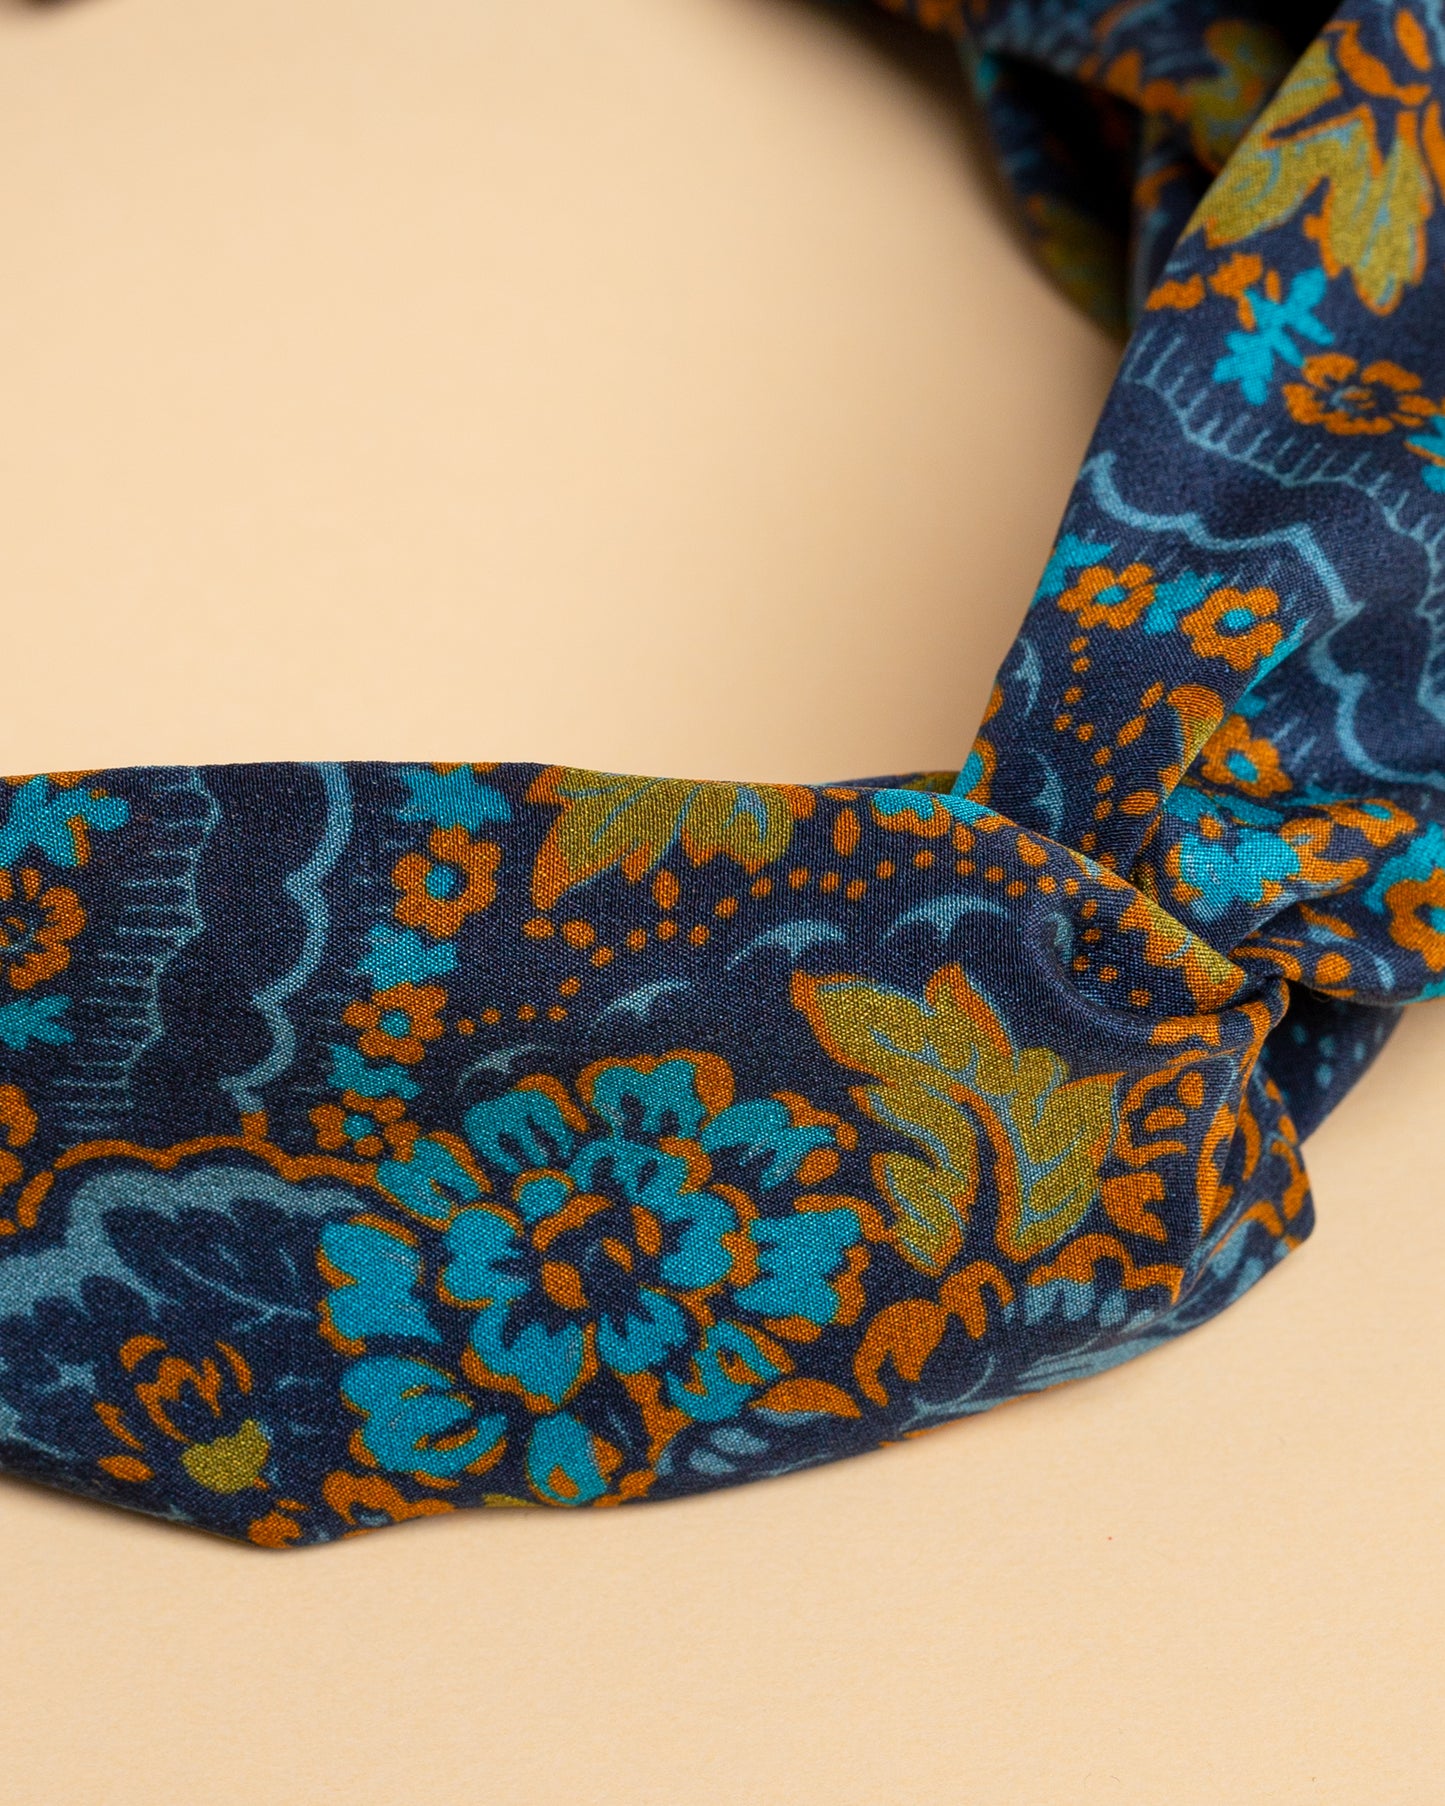 Fascia per capelli in seta Blu con motivi floreali tradizionali dei Balcani